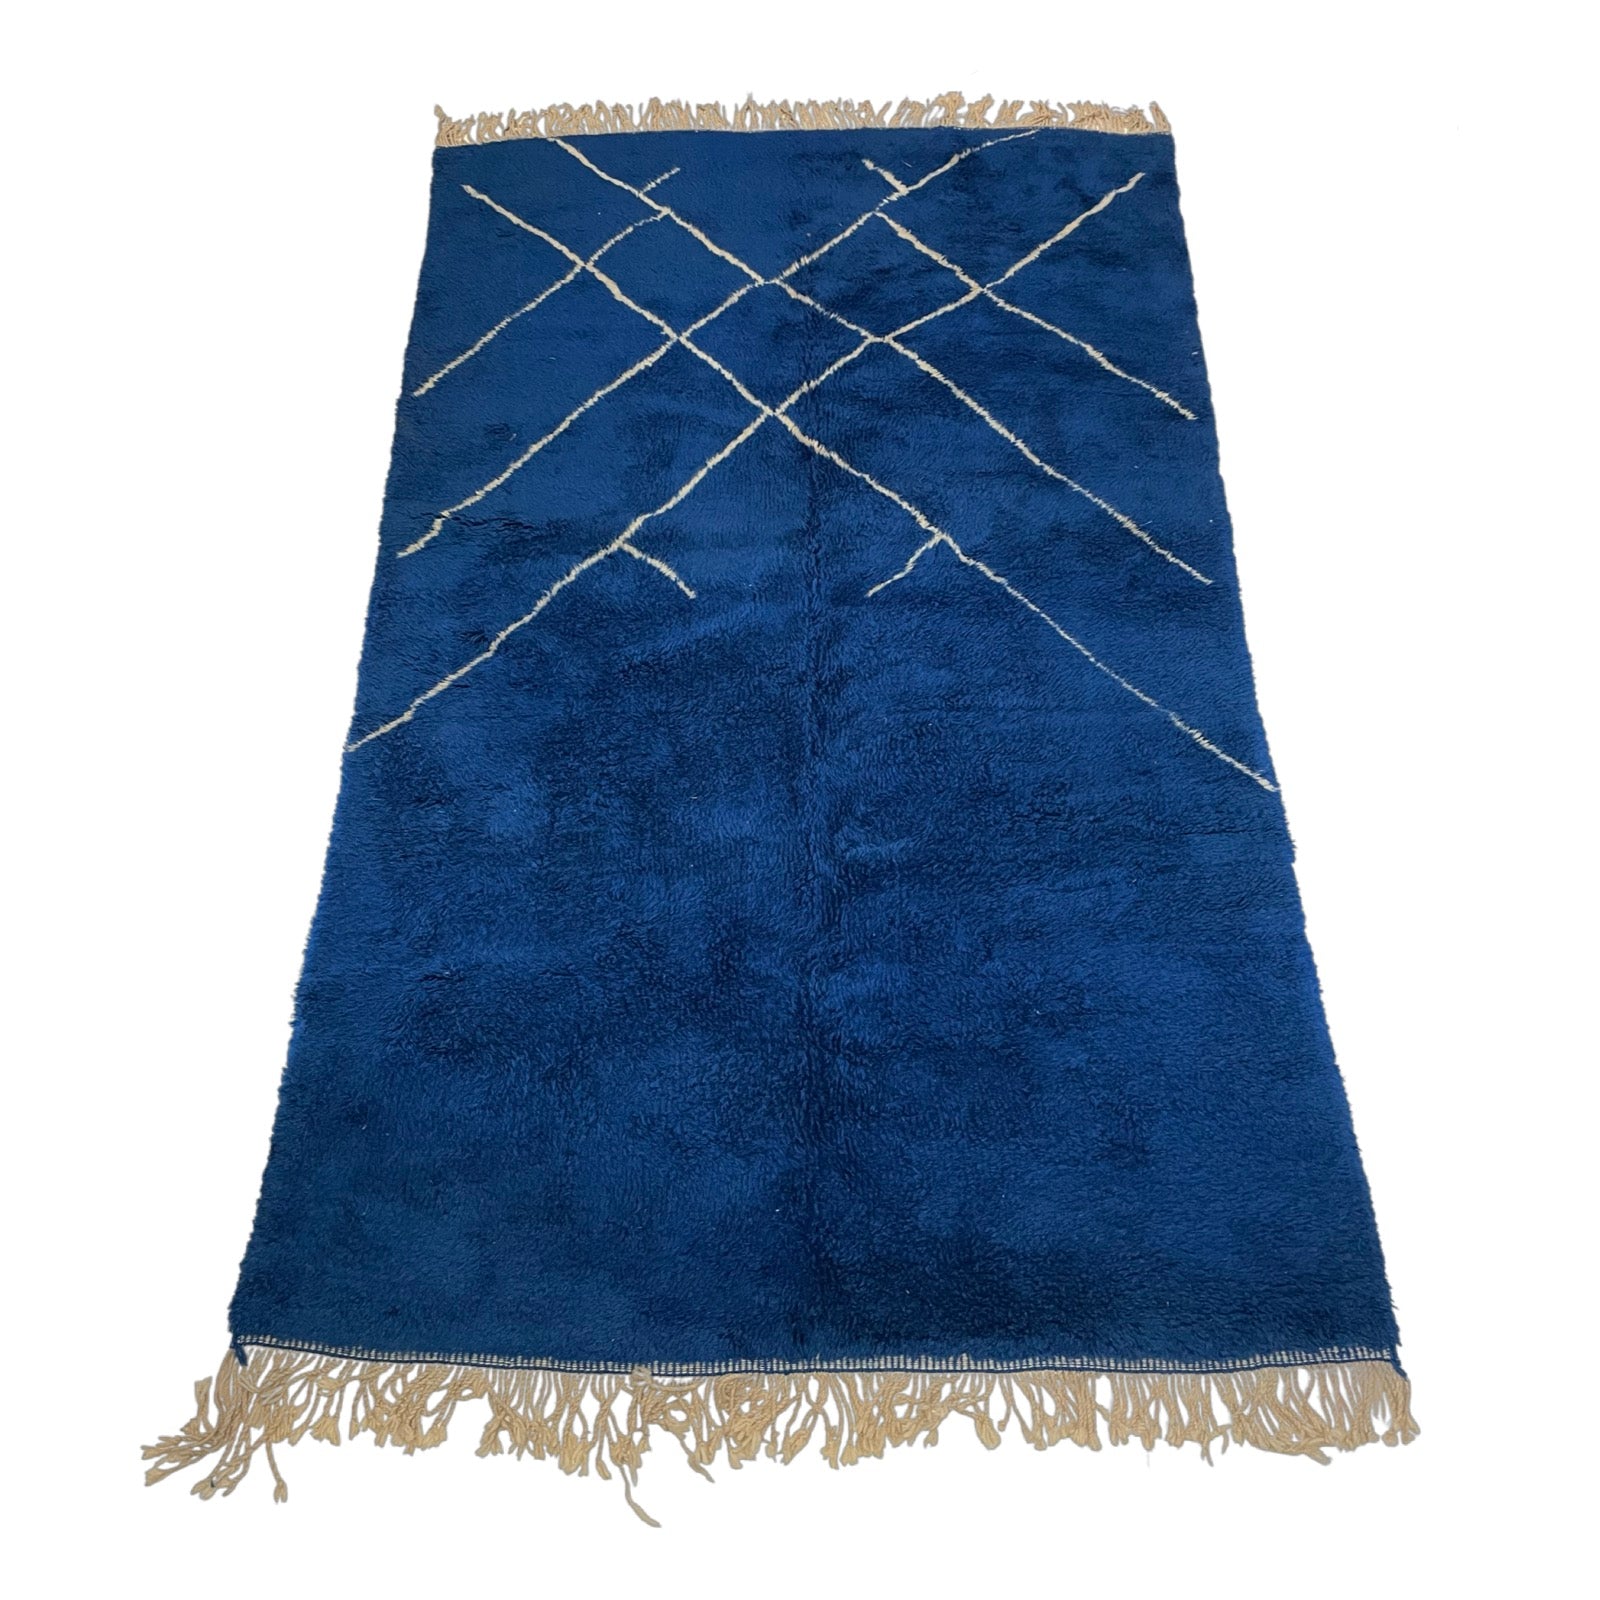 Blue contemporary Beni Ourain style Moroccan rug - Kantara | Moroccan Rugs